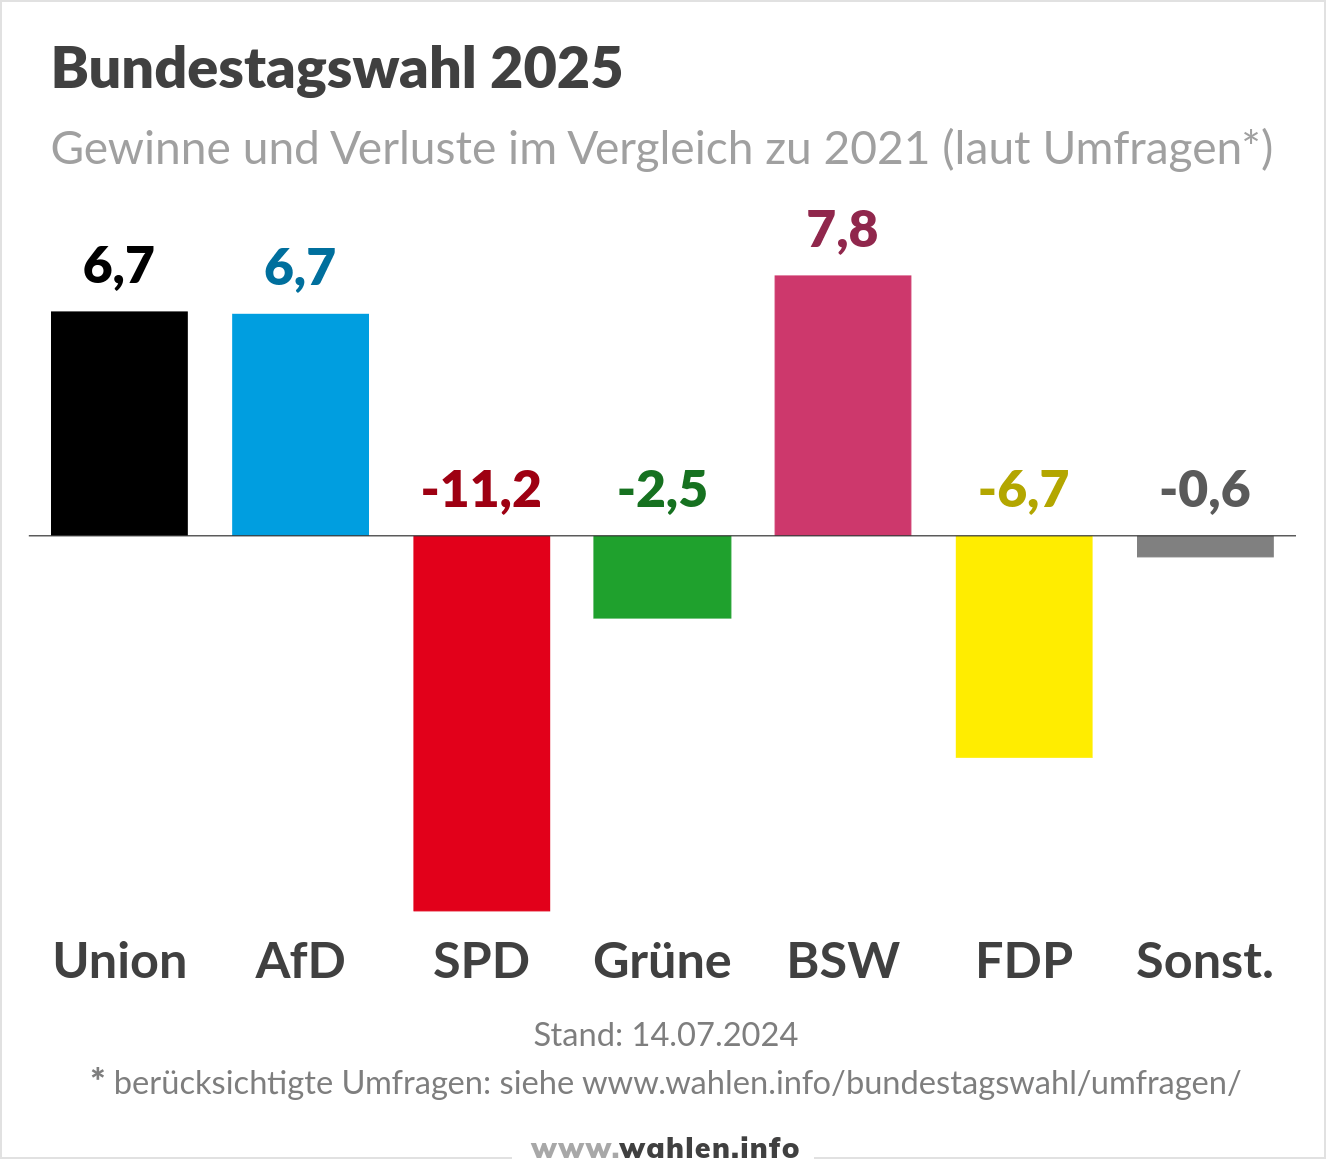 Bundestagswahl 2025 - Umfragen (Gewinne und Verluste)